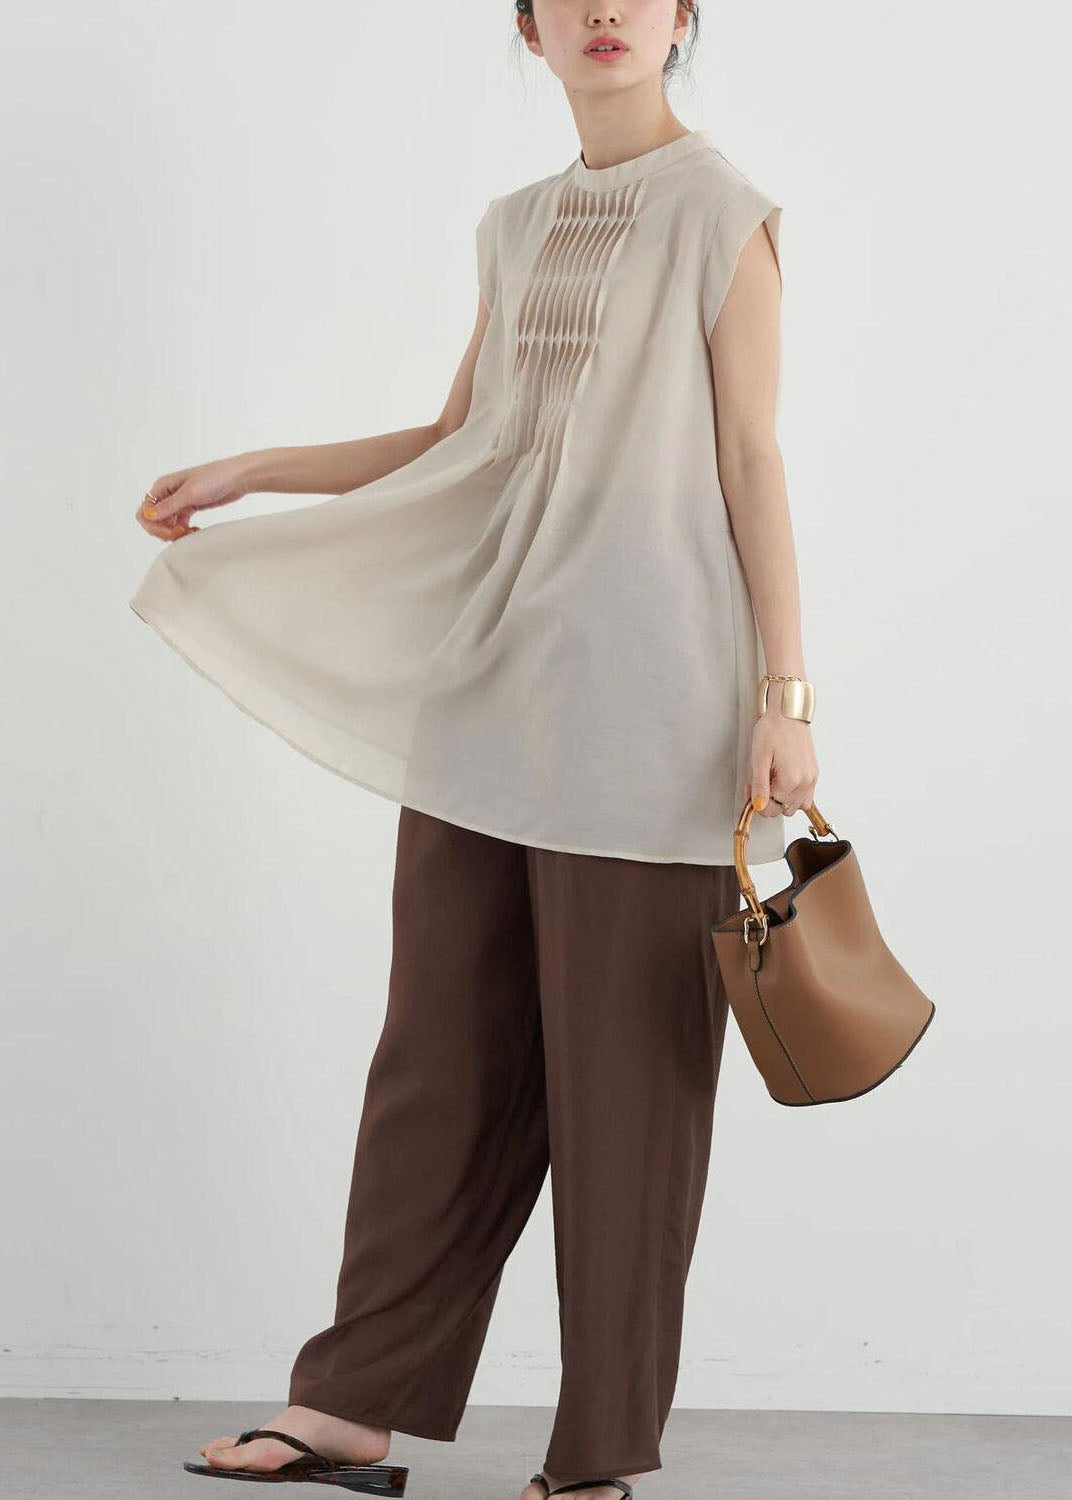 Women Apricot Slim Fit Pleated Cotton Long Shirt Sleeveless LY1324 - fabuloryshop